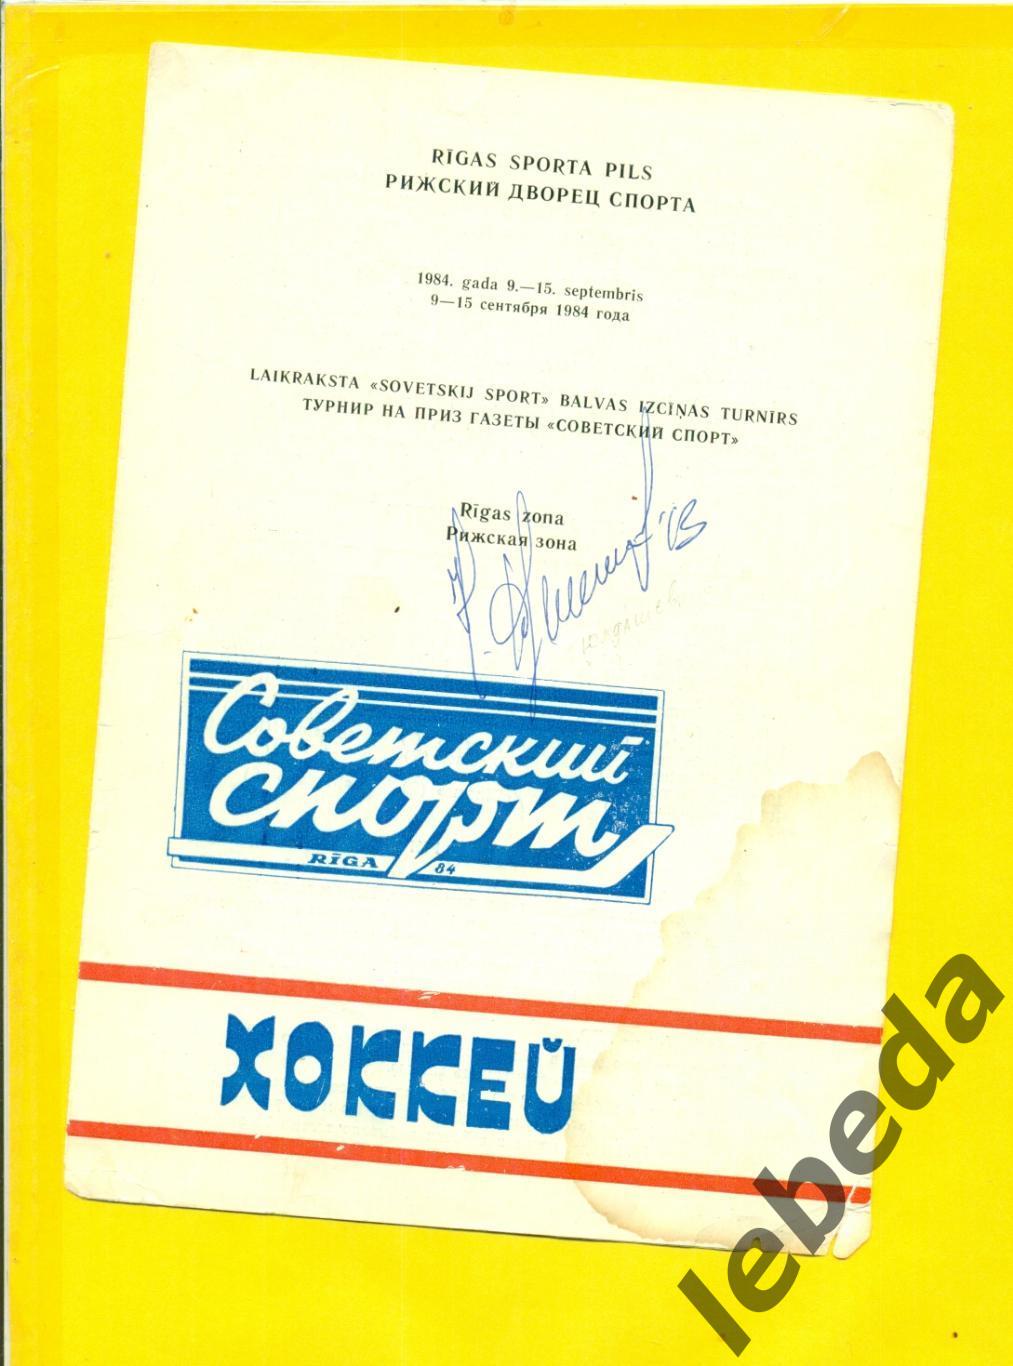 Рамиль Юлдашев (Сокол Киев,СЮ Уфа) на программке Советский спорт РИГА 1984 г.